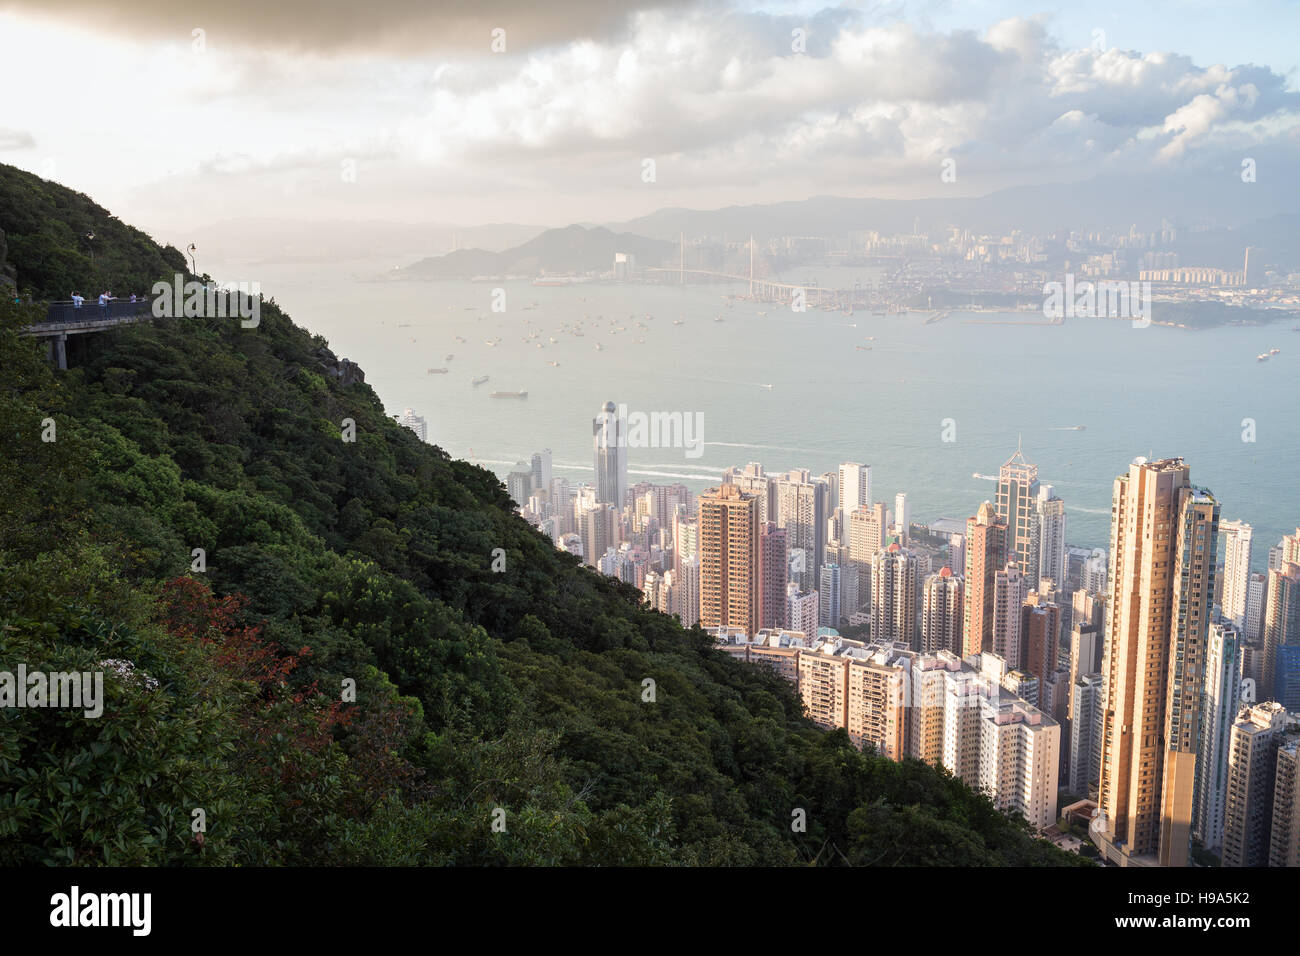 Menschen an einem Aussichtspunkt Bereich entlang der Lugard Road in der Victoria Peak und die Aussicht auf Hong Kong, China von oben. Stockfoto